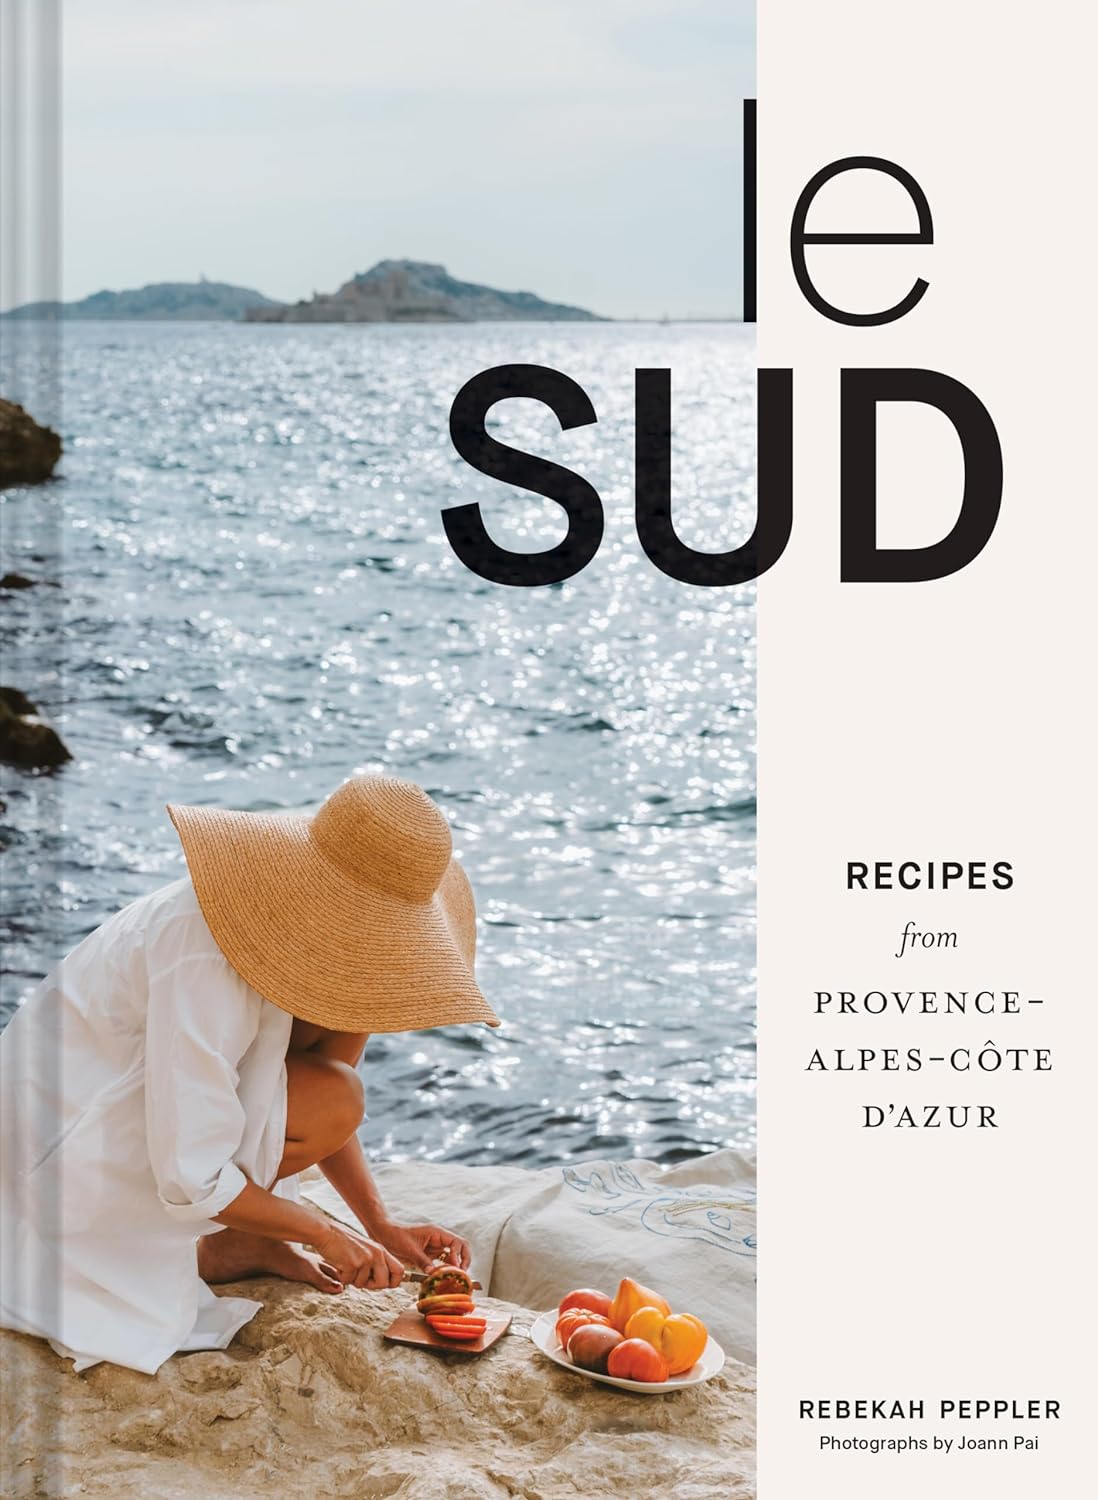 Le Sud: Recipes from Provence-Alpes-Côte d'Azur (Rebekah Peppler)